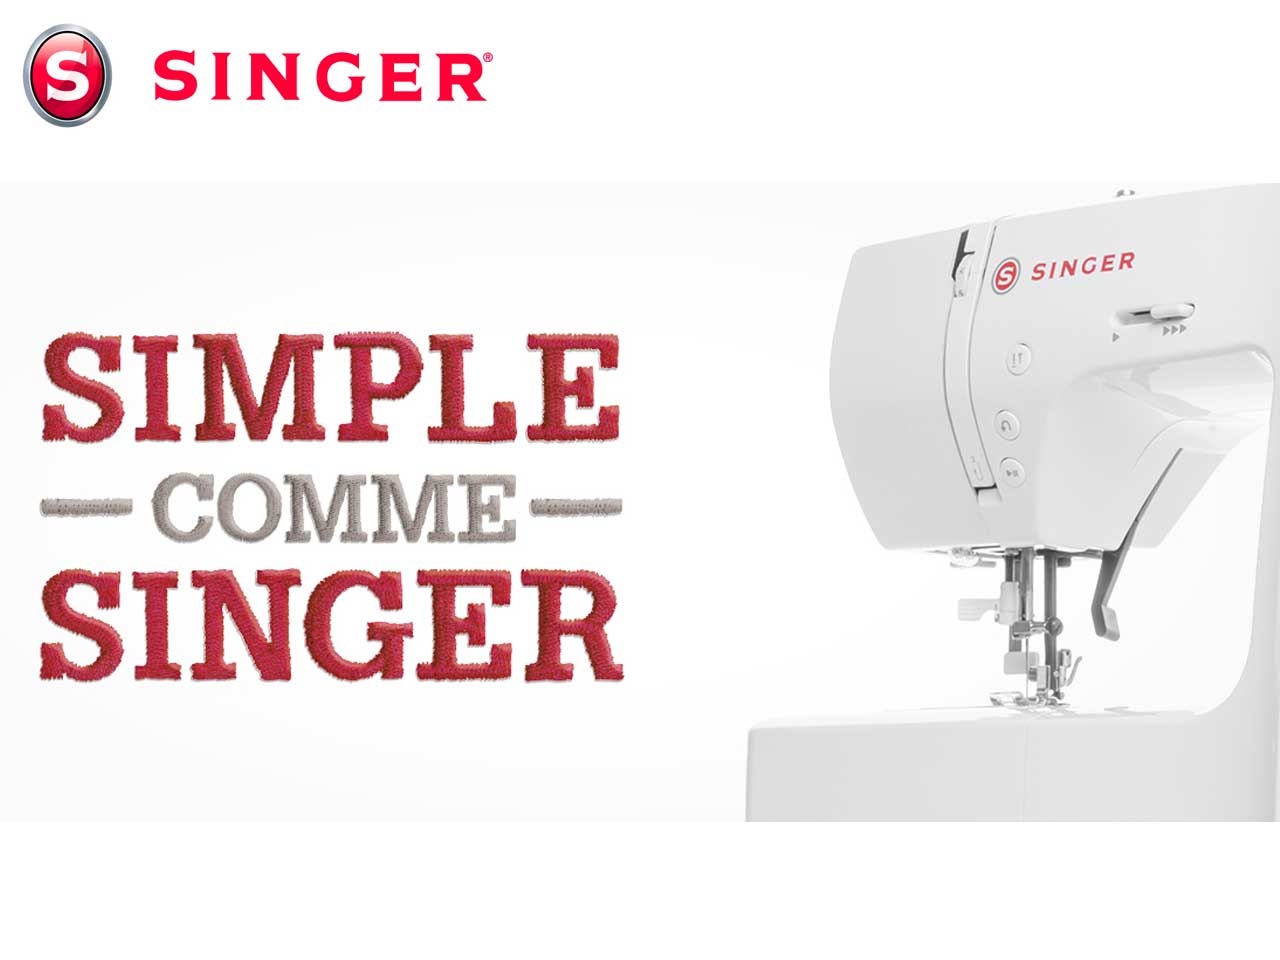 SINGER, la marque référence des machines à coudre, célèbre cette année ses 170 ans